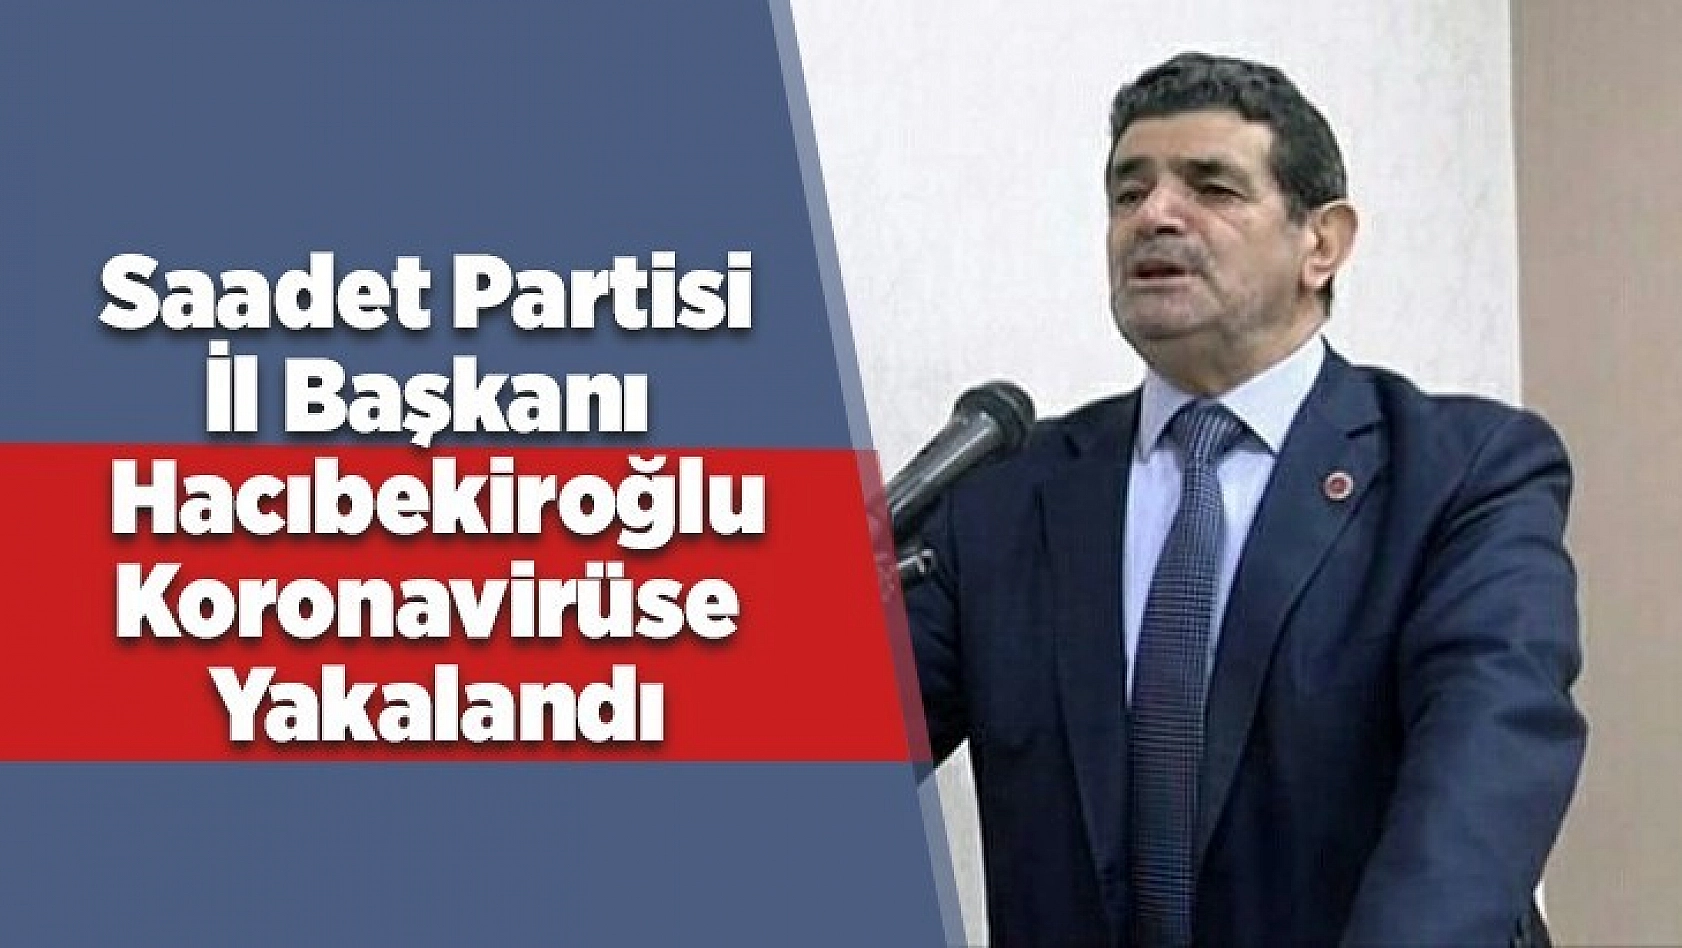 SP İl Başkanı Hacıbekiroğlu Koronavirüse Yakalandı